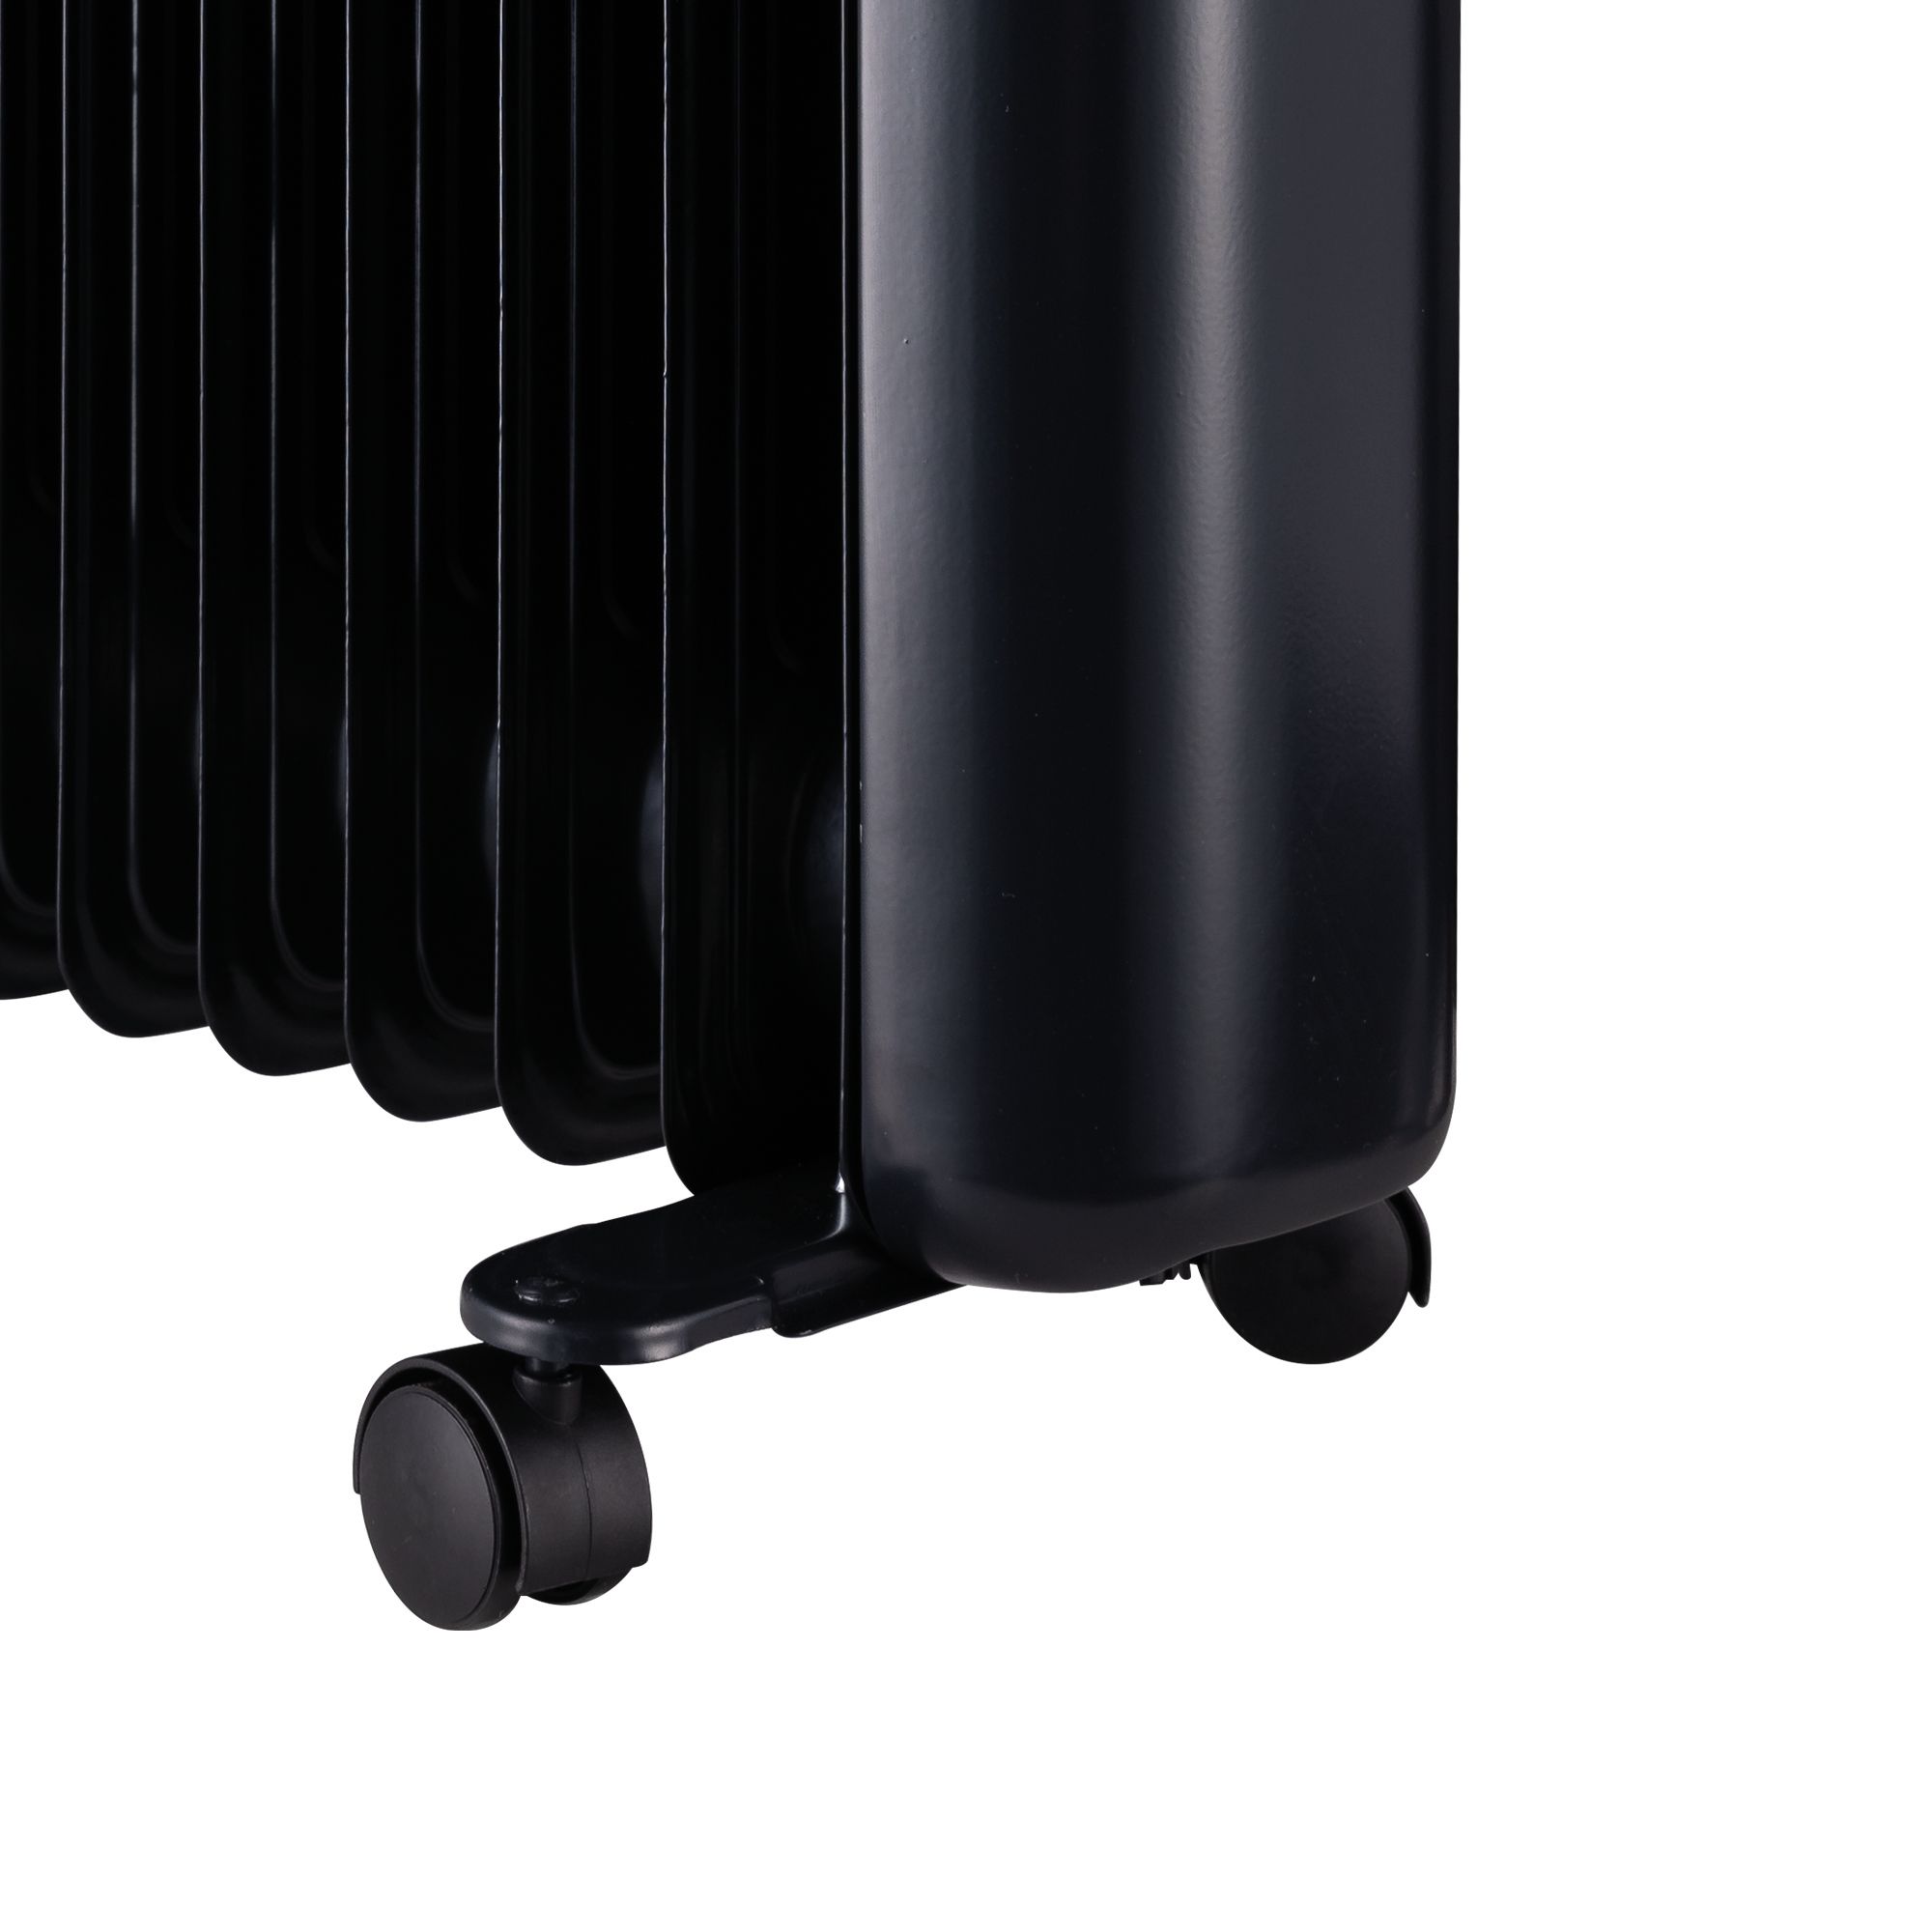 TCP Smart 220-240V 2kW Black Smart Oil-filled radiator